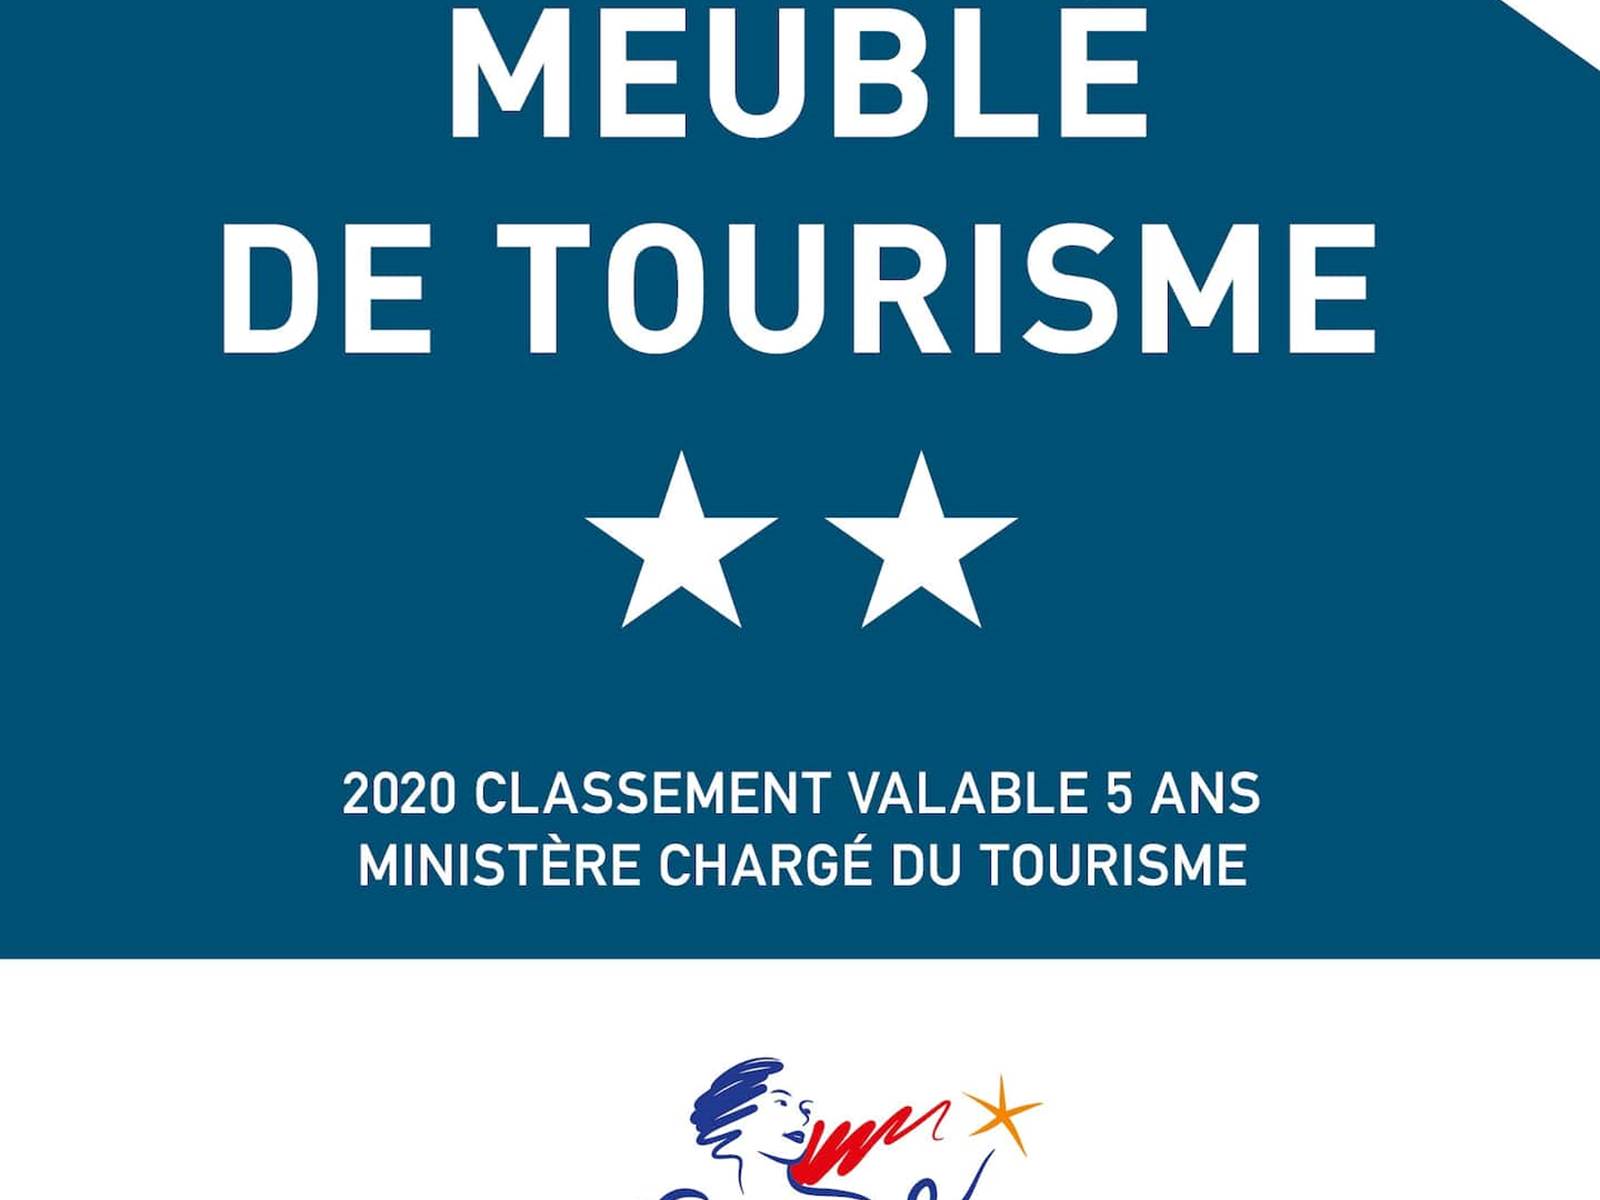 Meublé de tourisme classé 2 étoiles Atout France